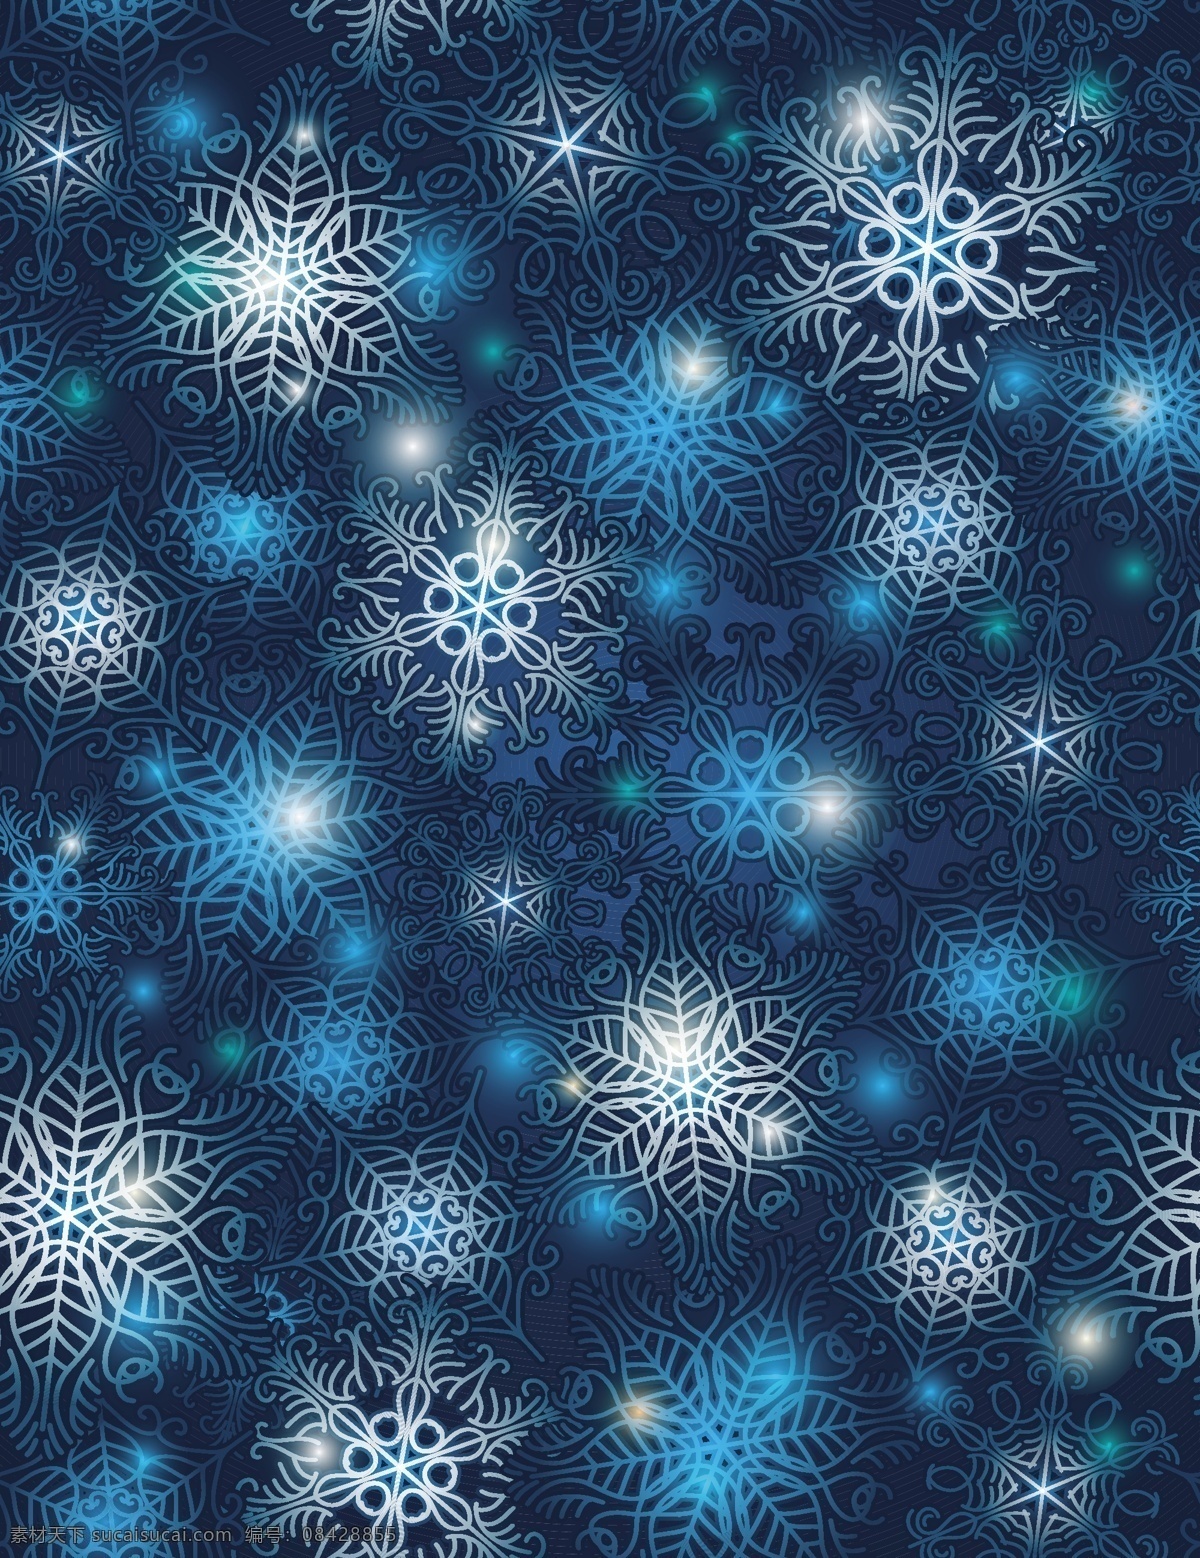 矢量 冬季 蓝色 雪花 背景 矢量素材 矢量图 花纹花边